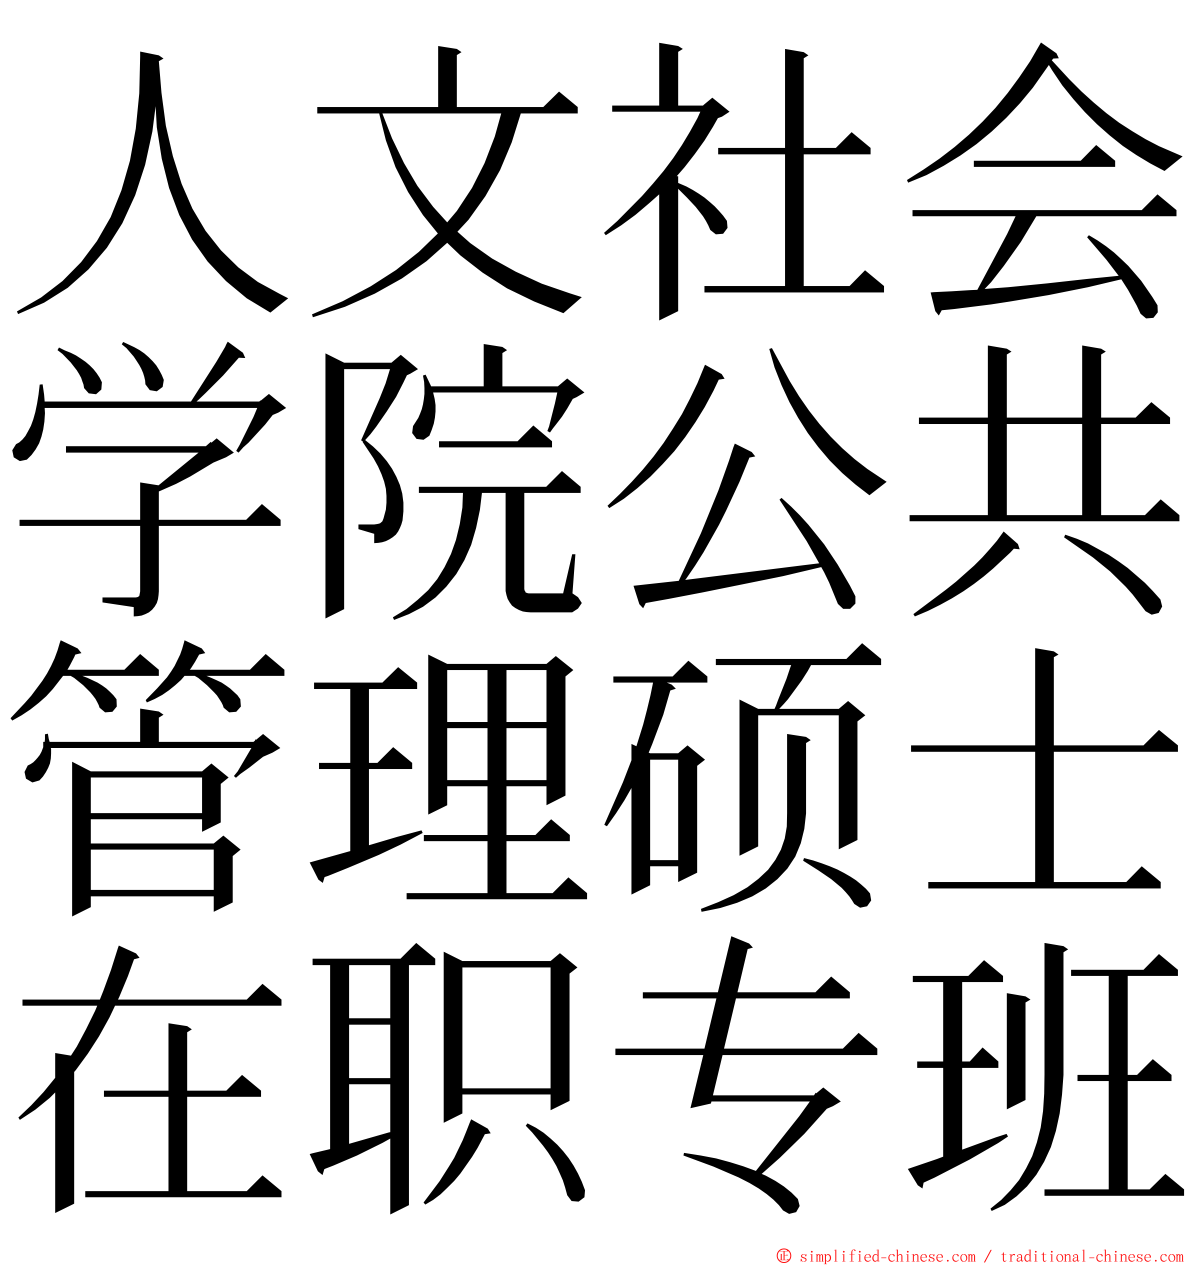 人文社会学院公共管理硕士在职专班 ming font